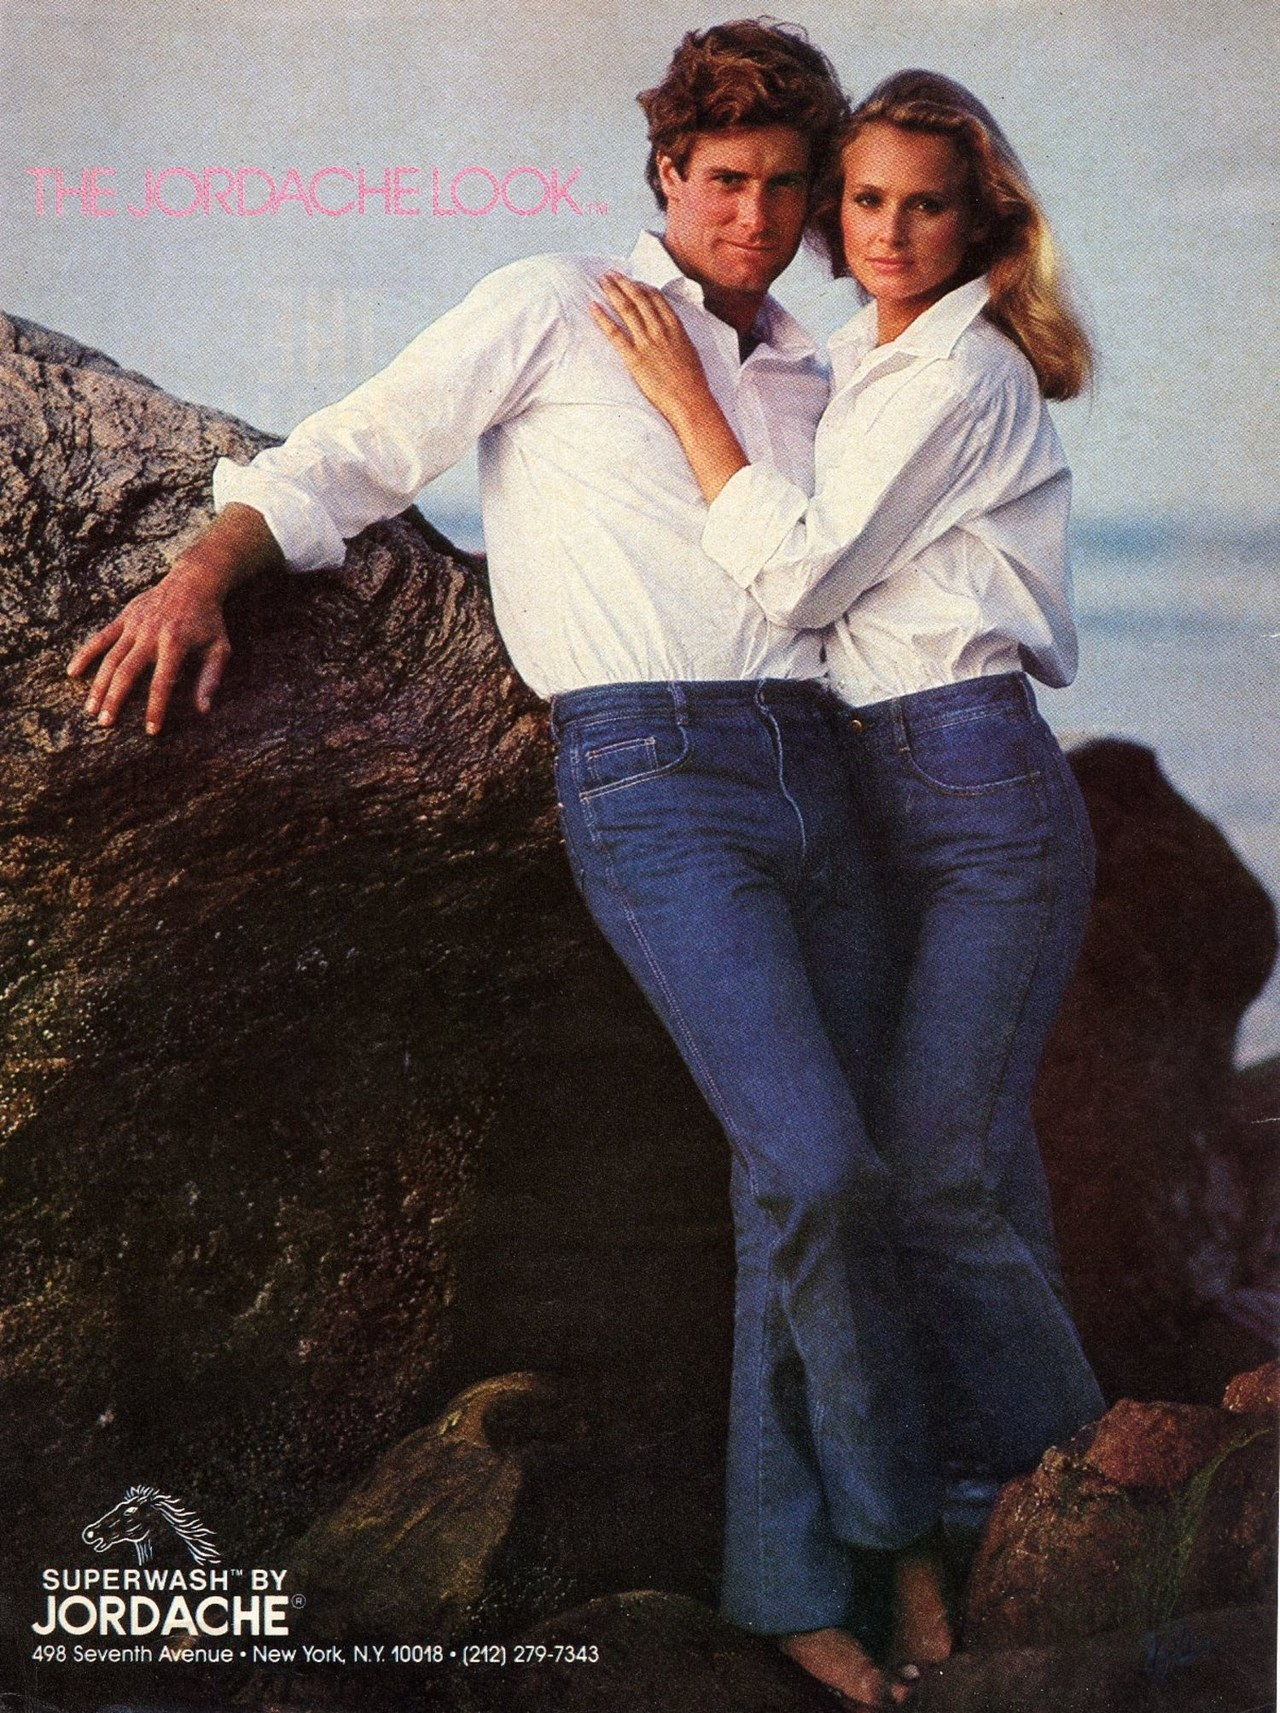 jordache jean ads 70s 80s vintage couples